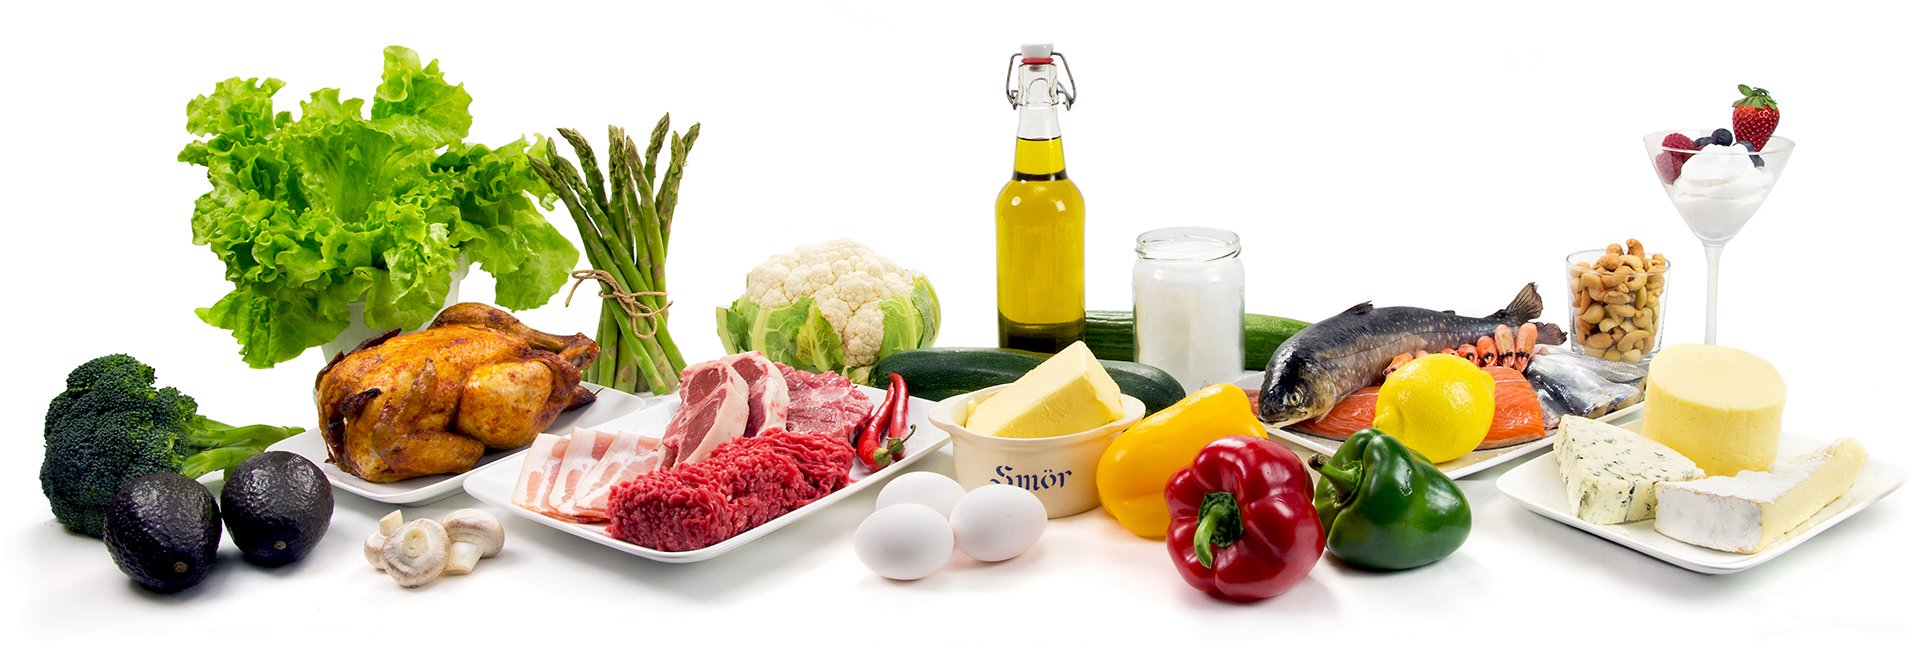 KETO: olivenolje, grønnsaker, smør, kjøtt er helt flott keto-mat. 